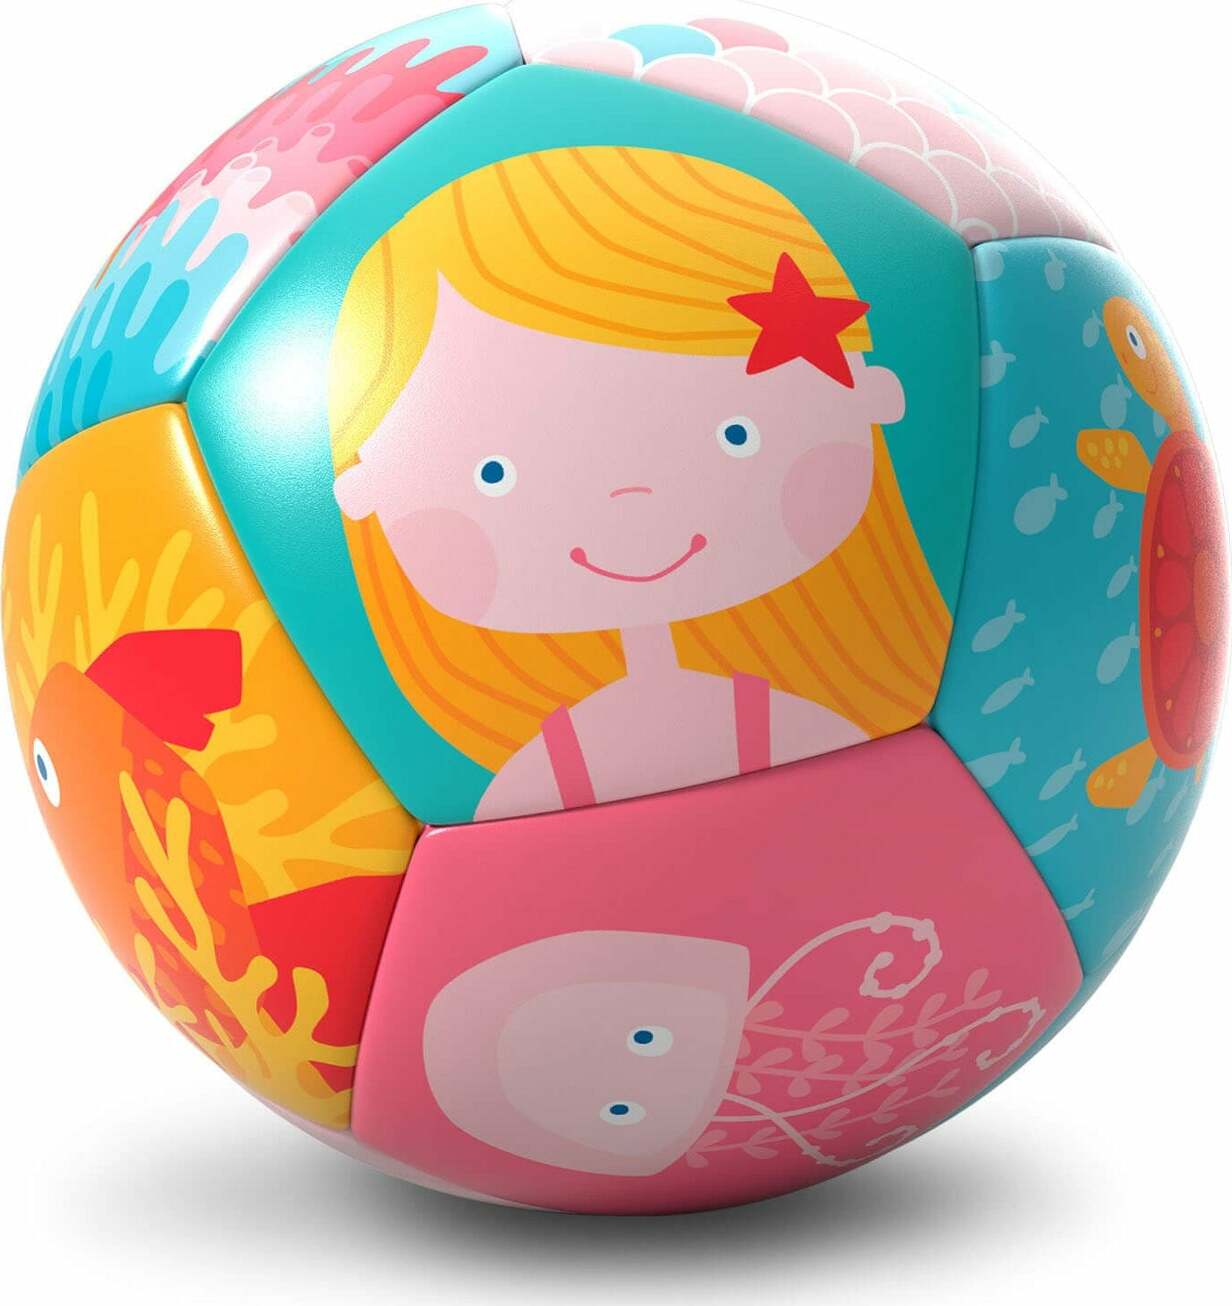 Mermaid Soft Baby Ball 4.5"